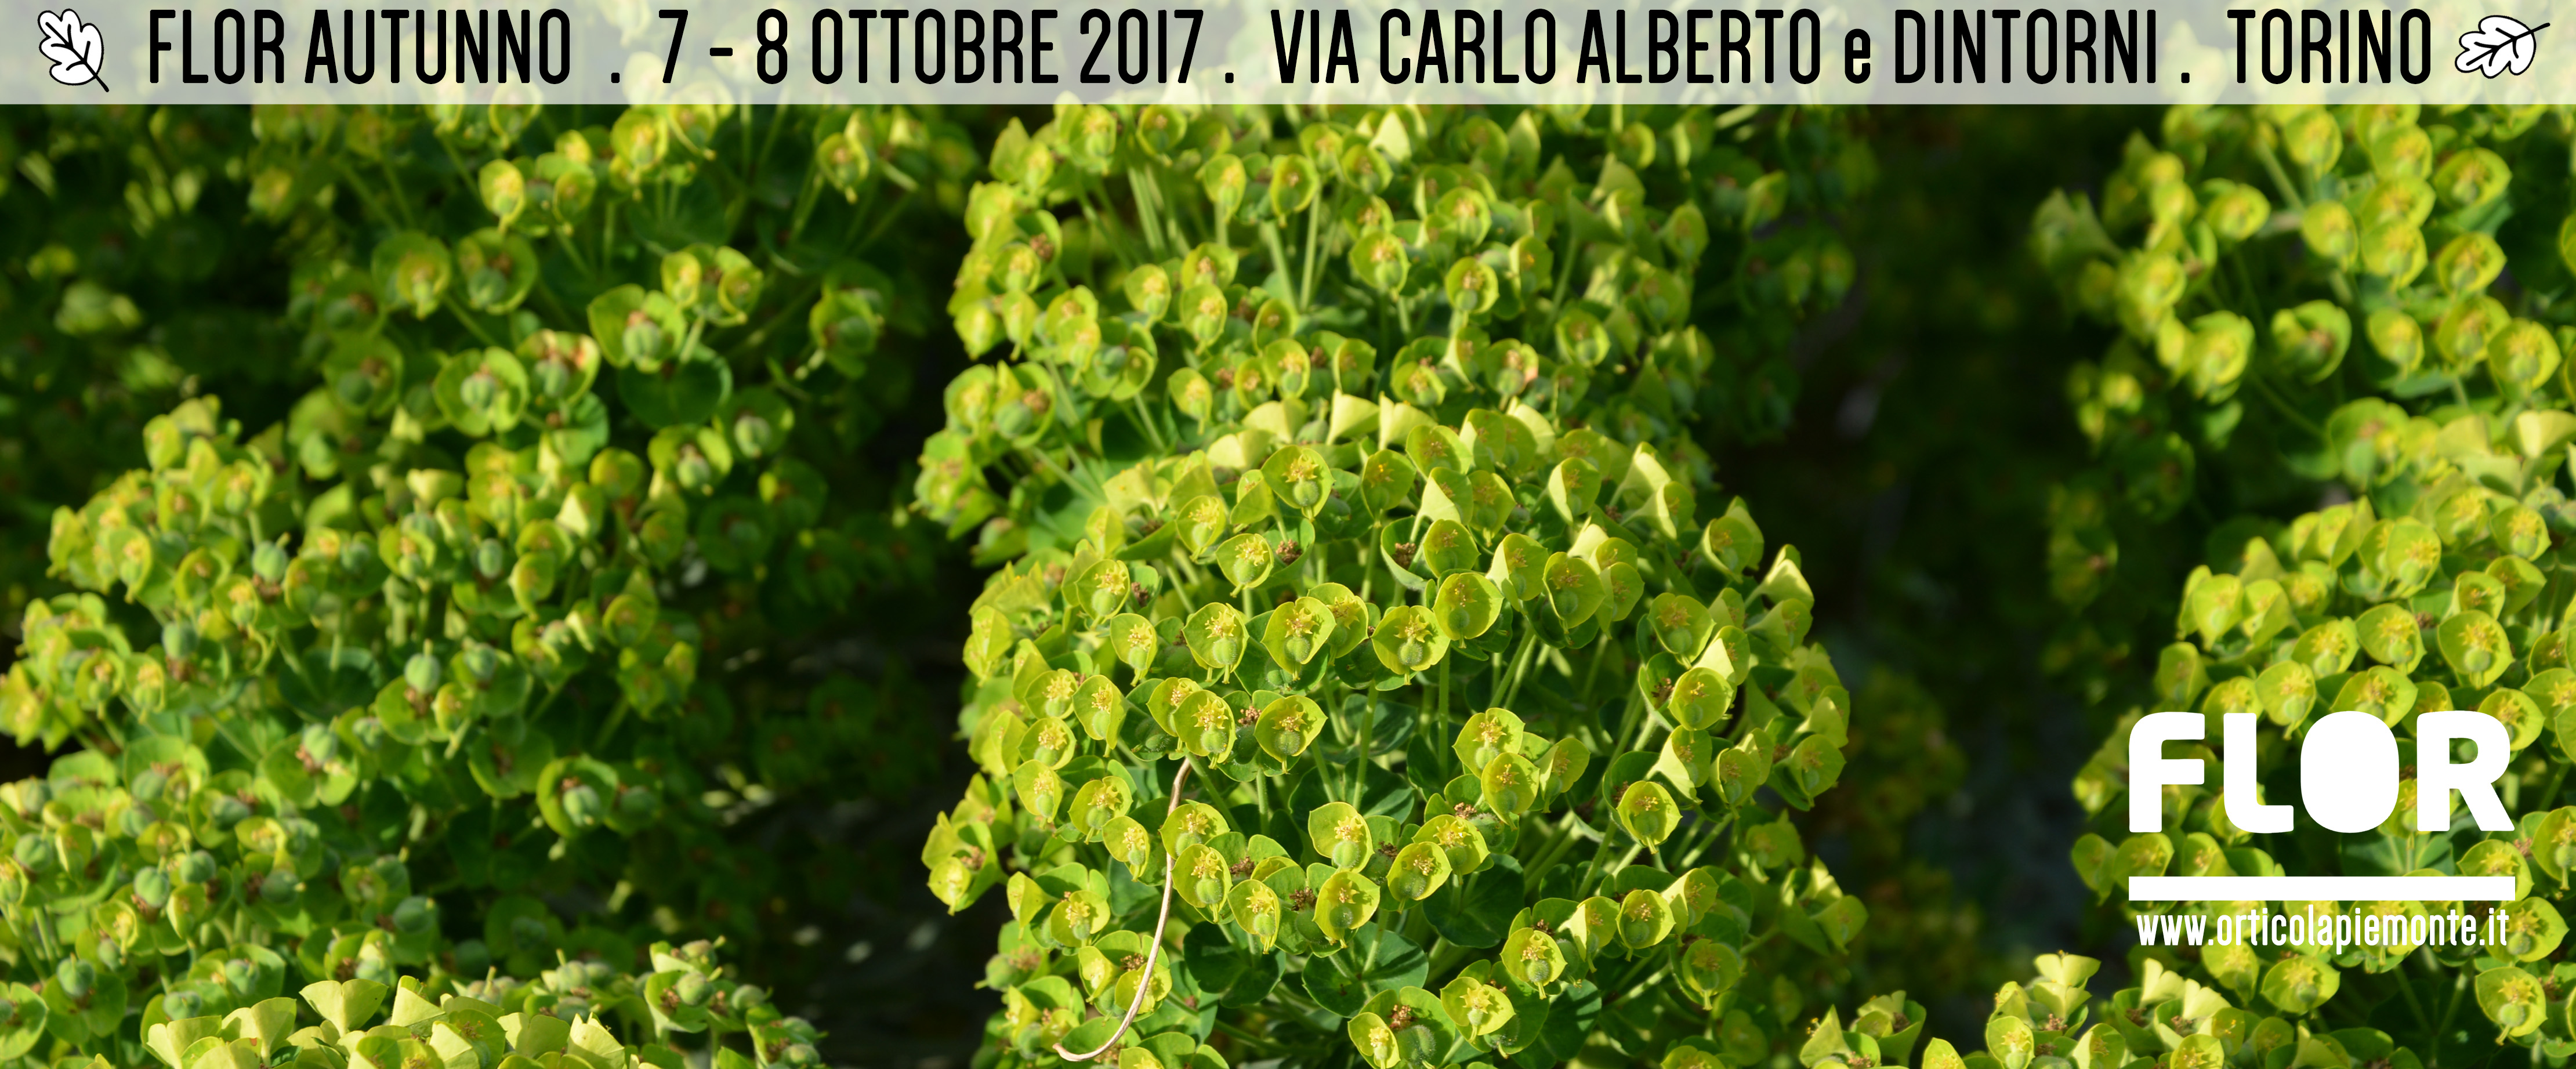 Flor autunno 2017 – 7 e 8 ottobre